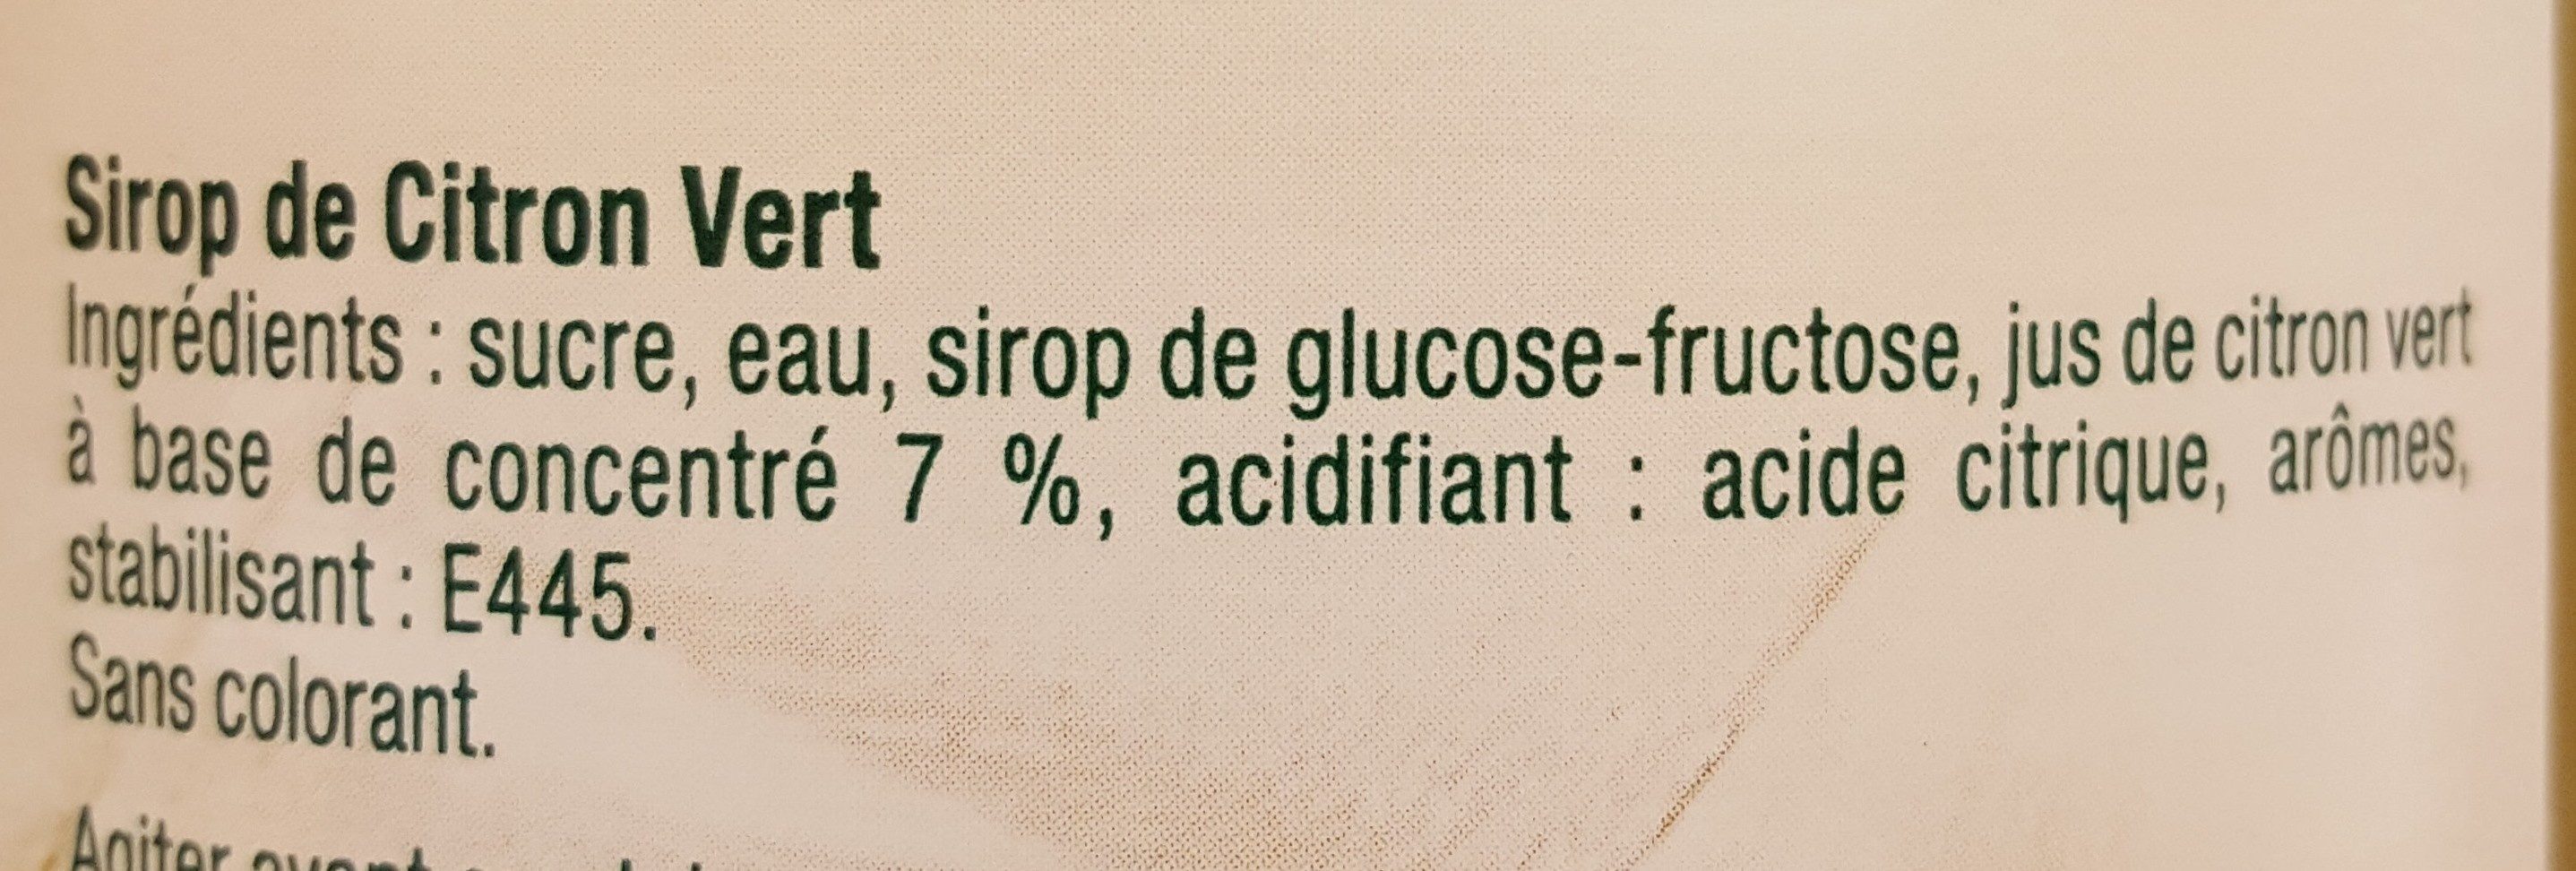 Sirop de Citron vert - Ingredients - fr